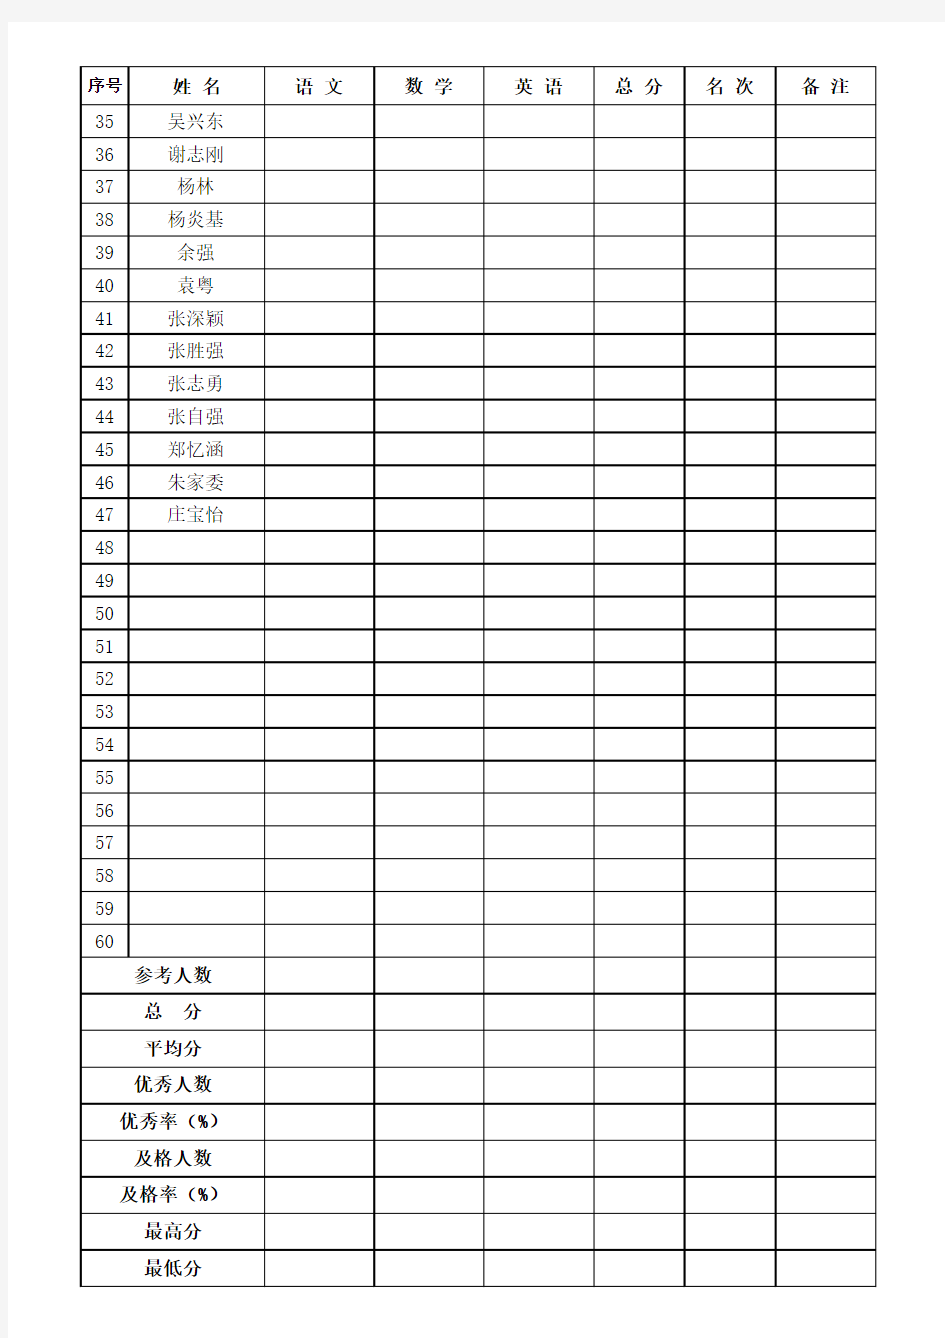 中小学语数英考试成绩表(空表)